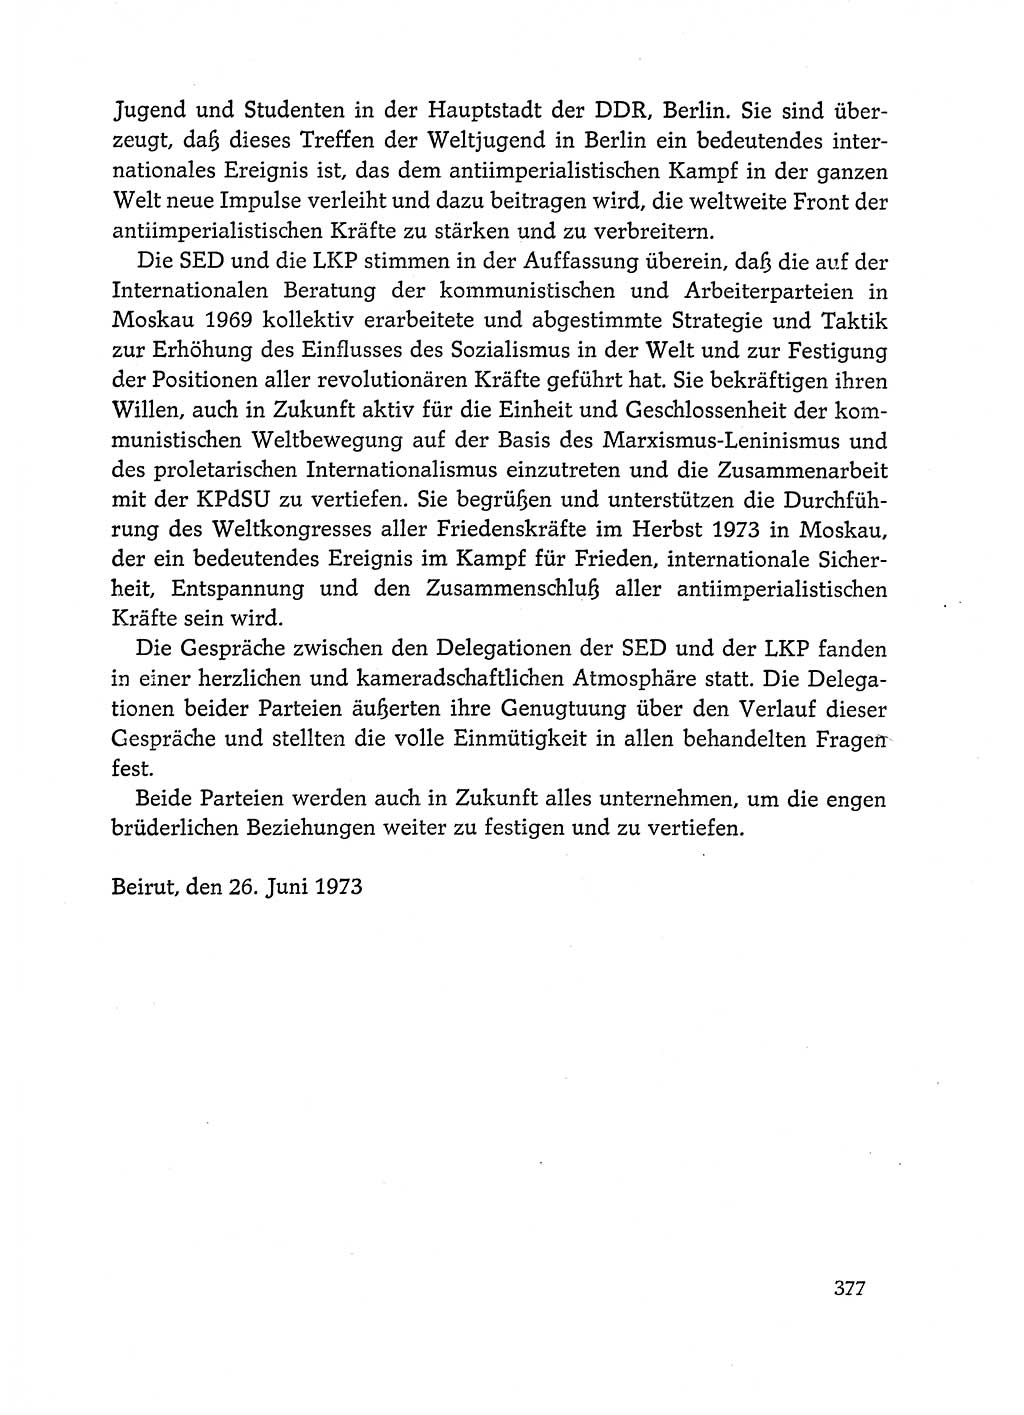 Dokumente der Sozialistischen Einheitspartei Deutschlands (SED) [Deutsche Demokratische Republik (DDR)] 1972-1973, Seite 377 (Dok. SED DDR 1972-1973, S. 377)